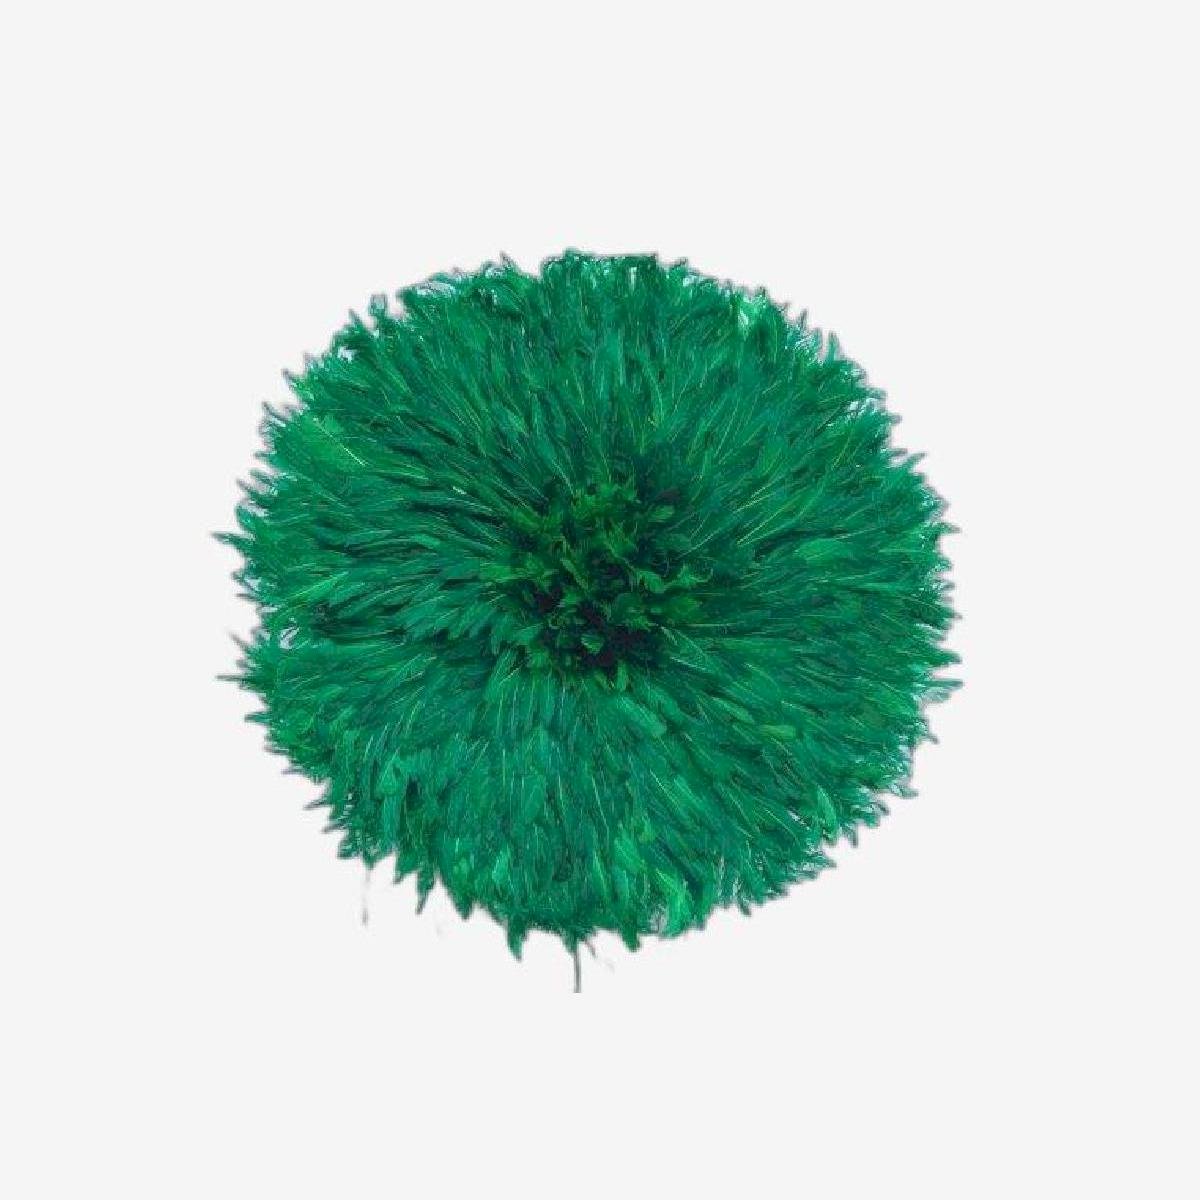 juju hat green of 80 cm